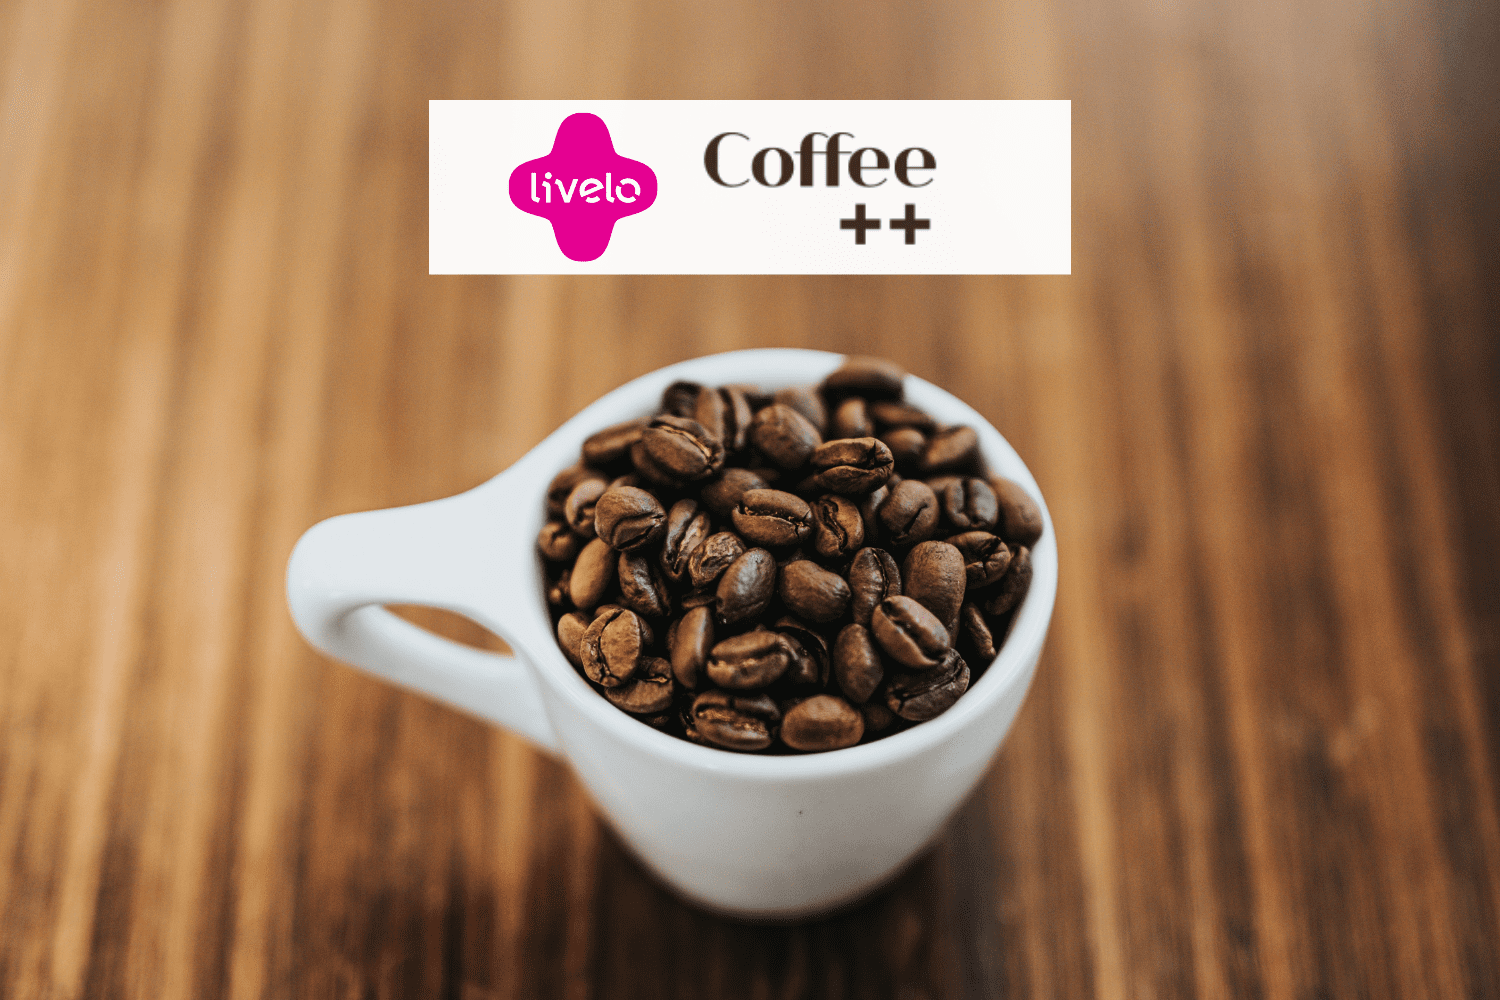 xícara com grãos de café e logo Livelo e Cofee++ até 6 pontos Livelo